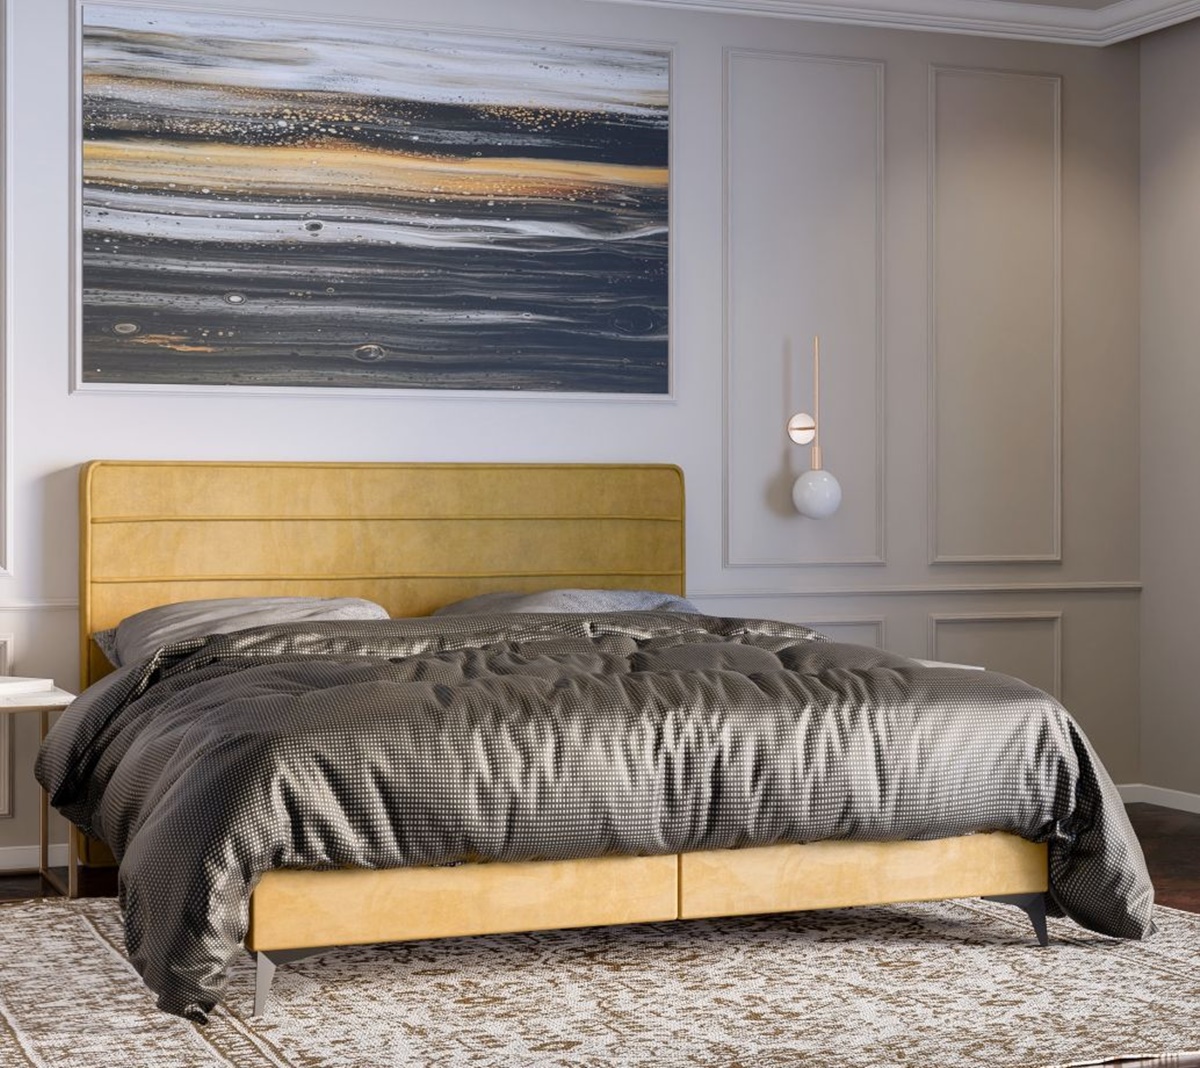 Nowoczesne łóżko kontynentalne z materacem i opcją pojemnika na pościel 80x200 HORIZON w modnym stylu w kolorze żółtym